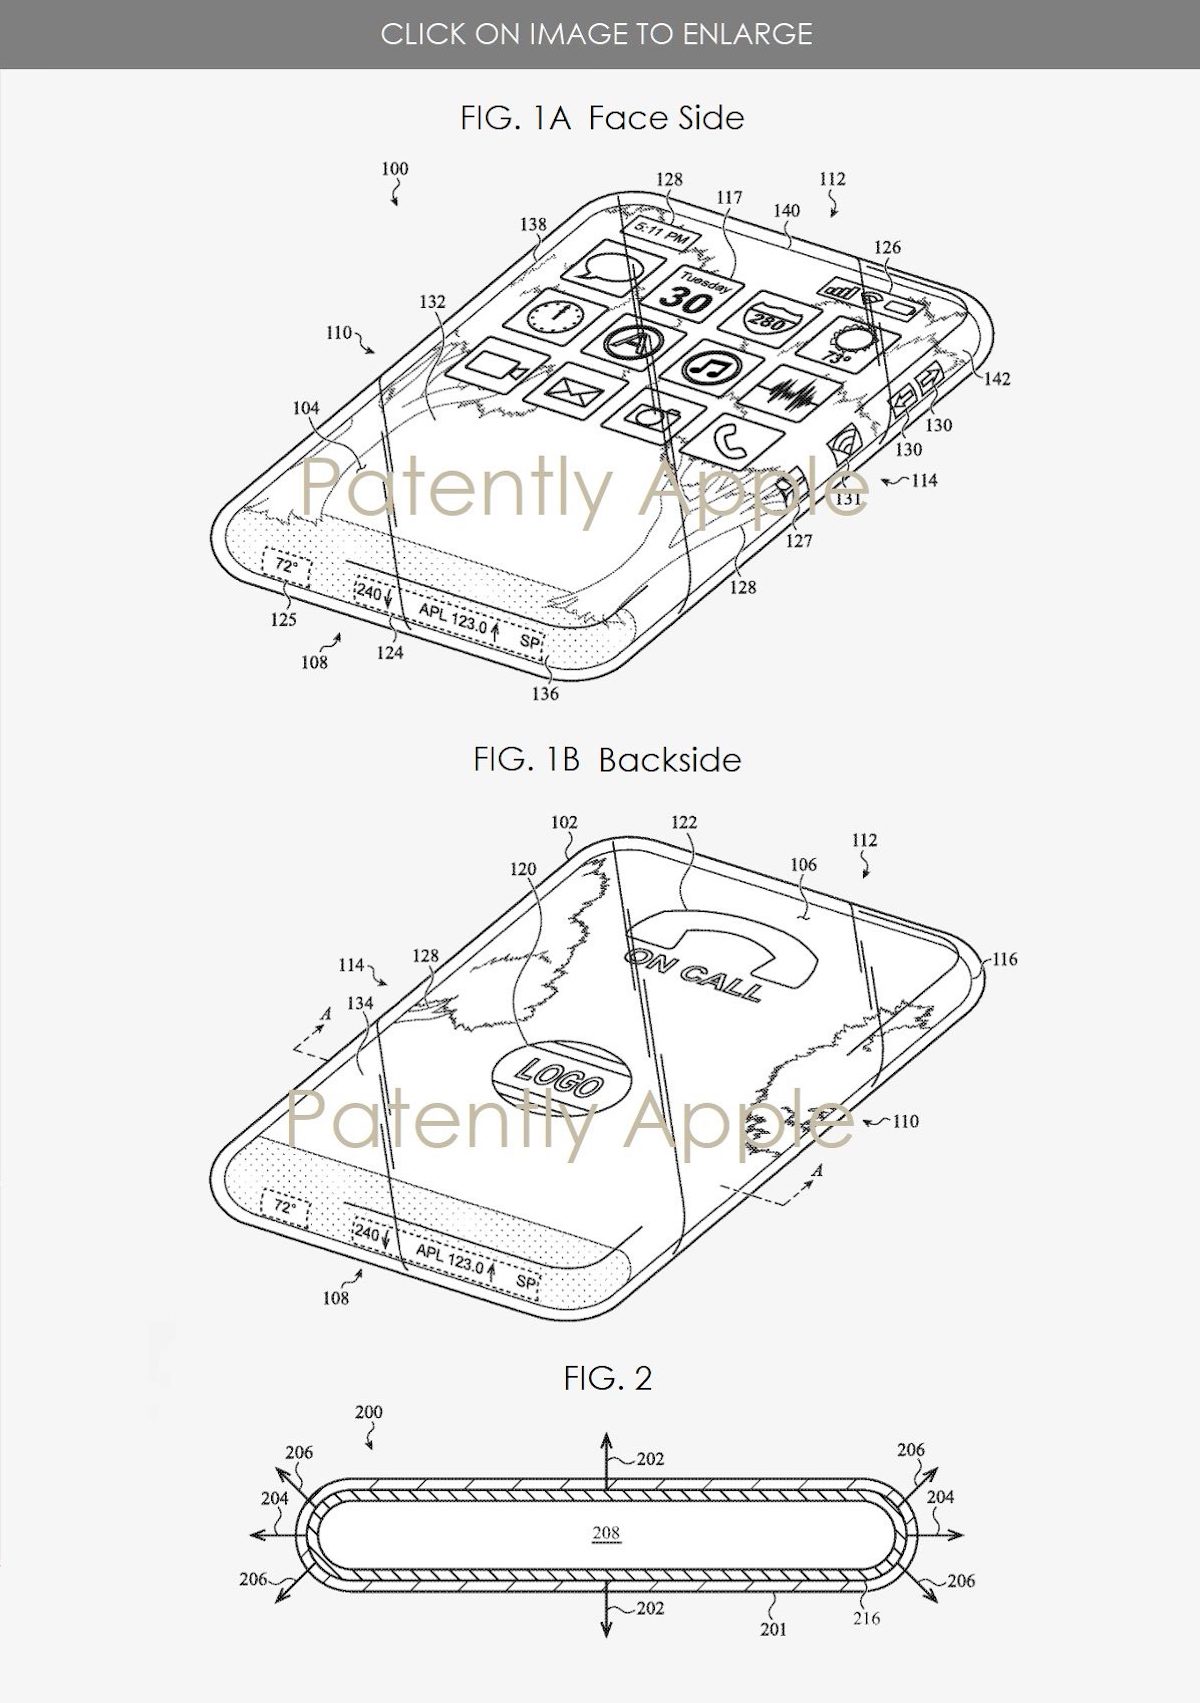 Apple brevetta l’iPhone tutto vetro